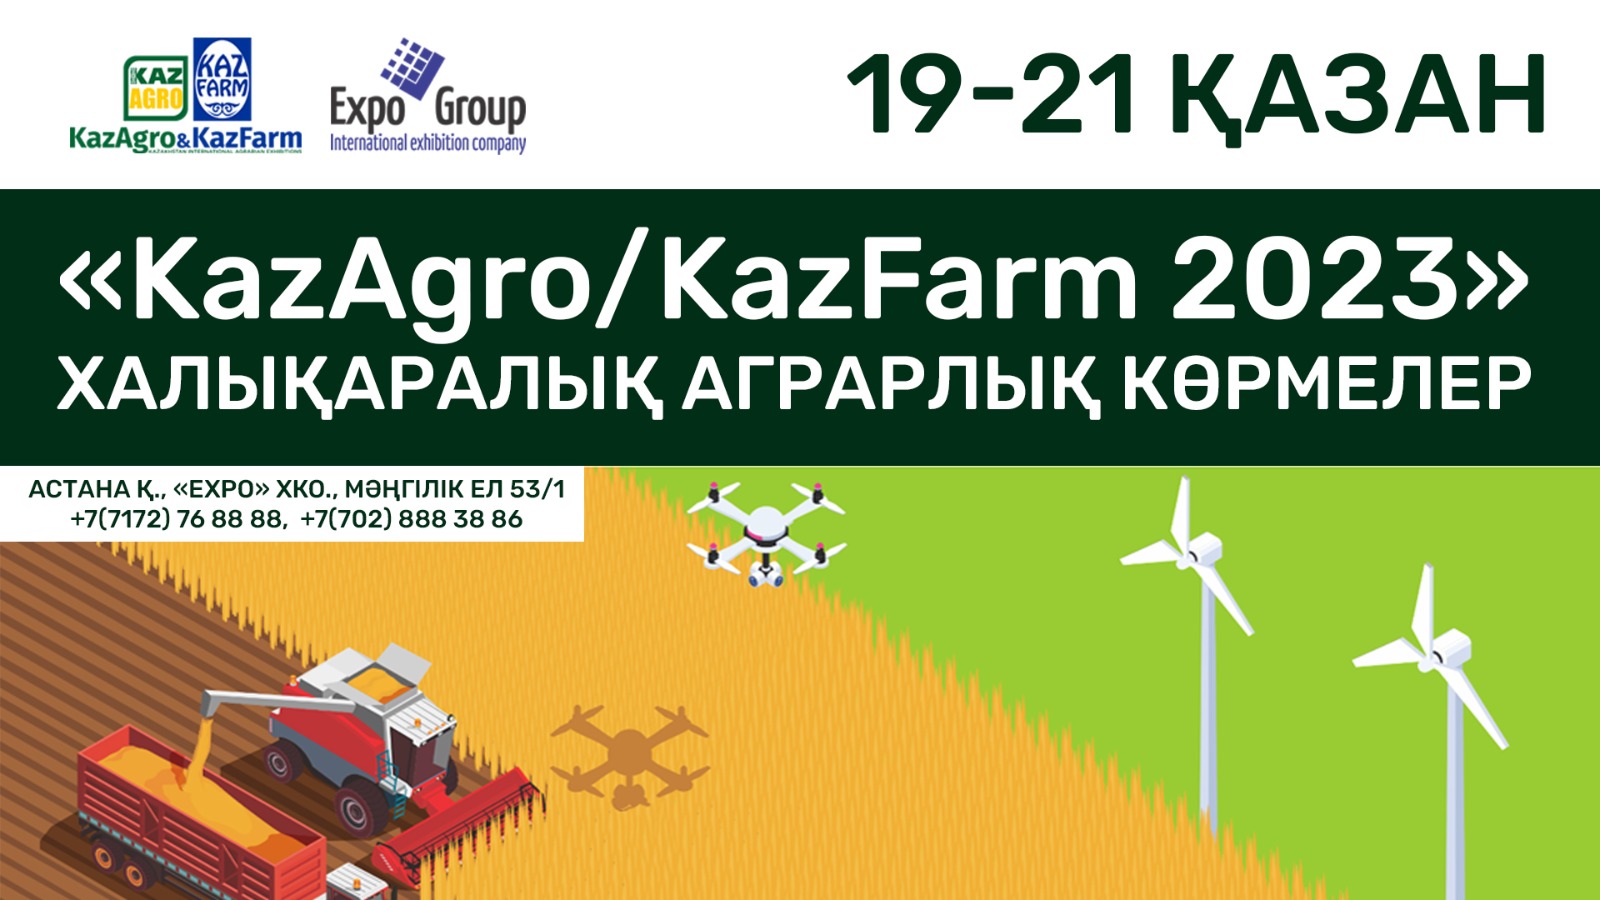 EXPO ХКО-да KazAgro/KazFarm 2023 халықаралық аграрлық көрмелері өтеді